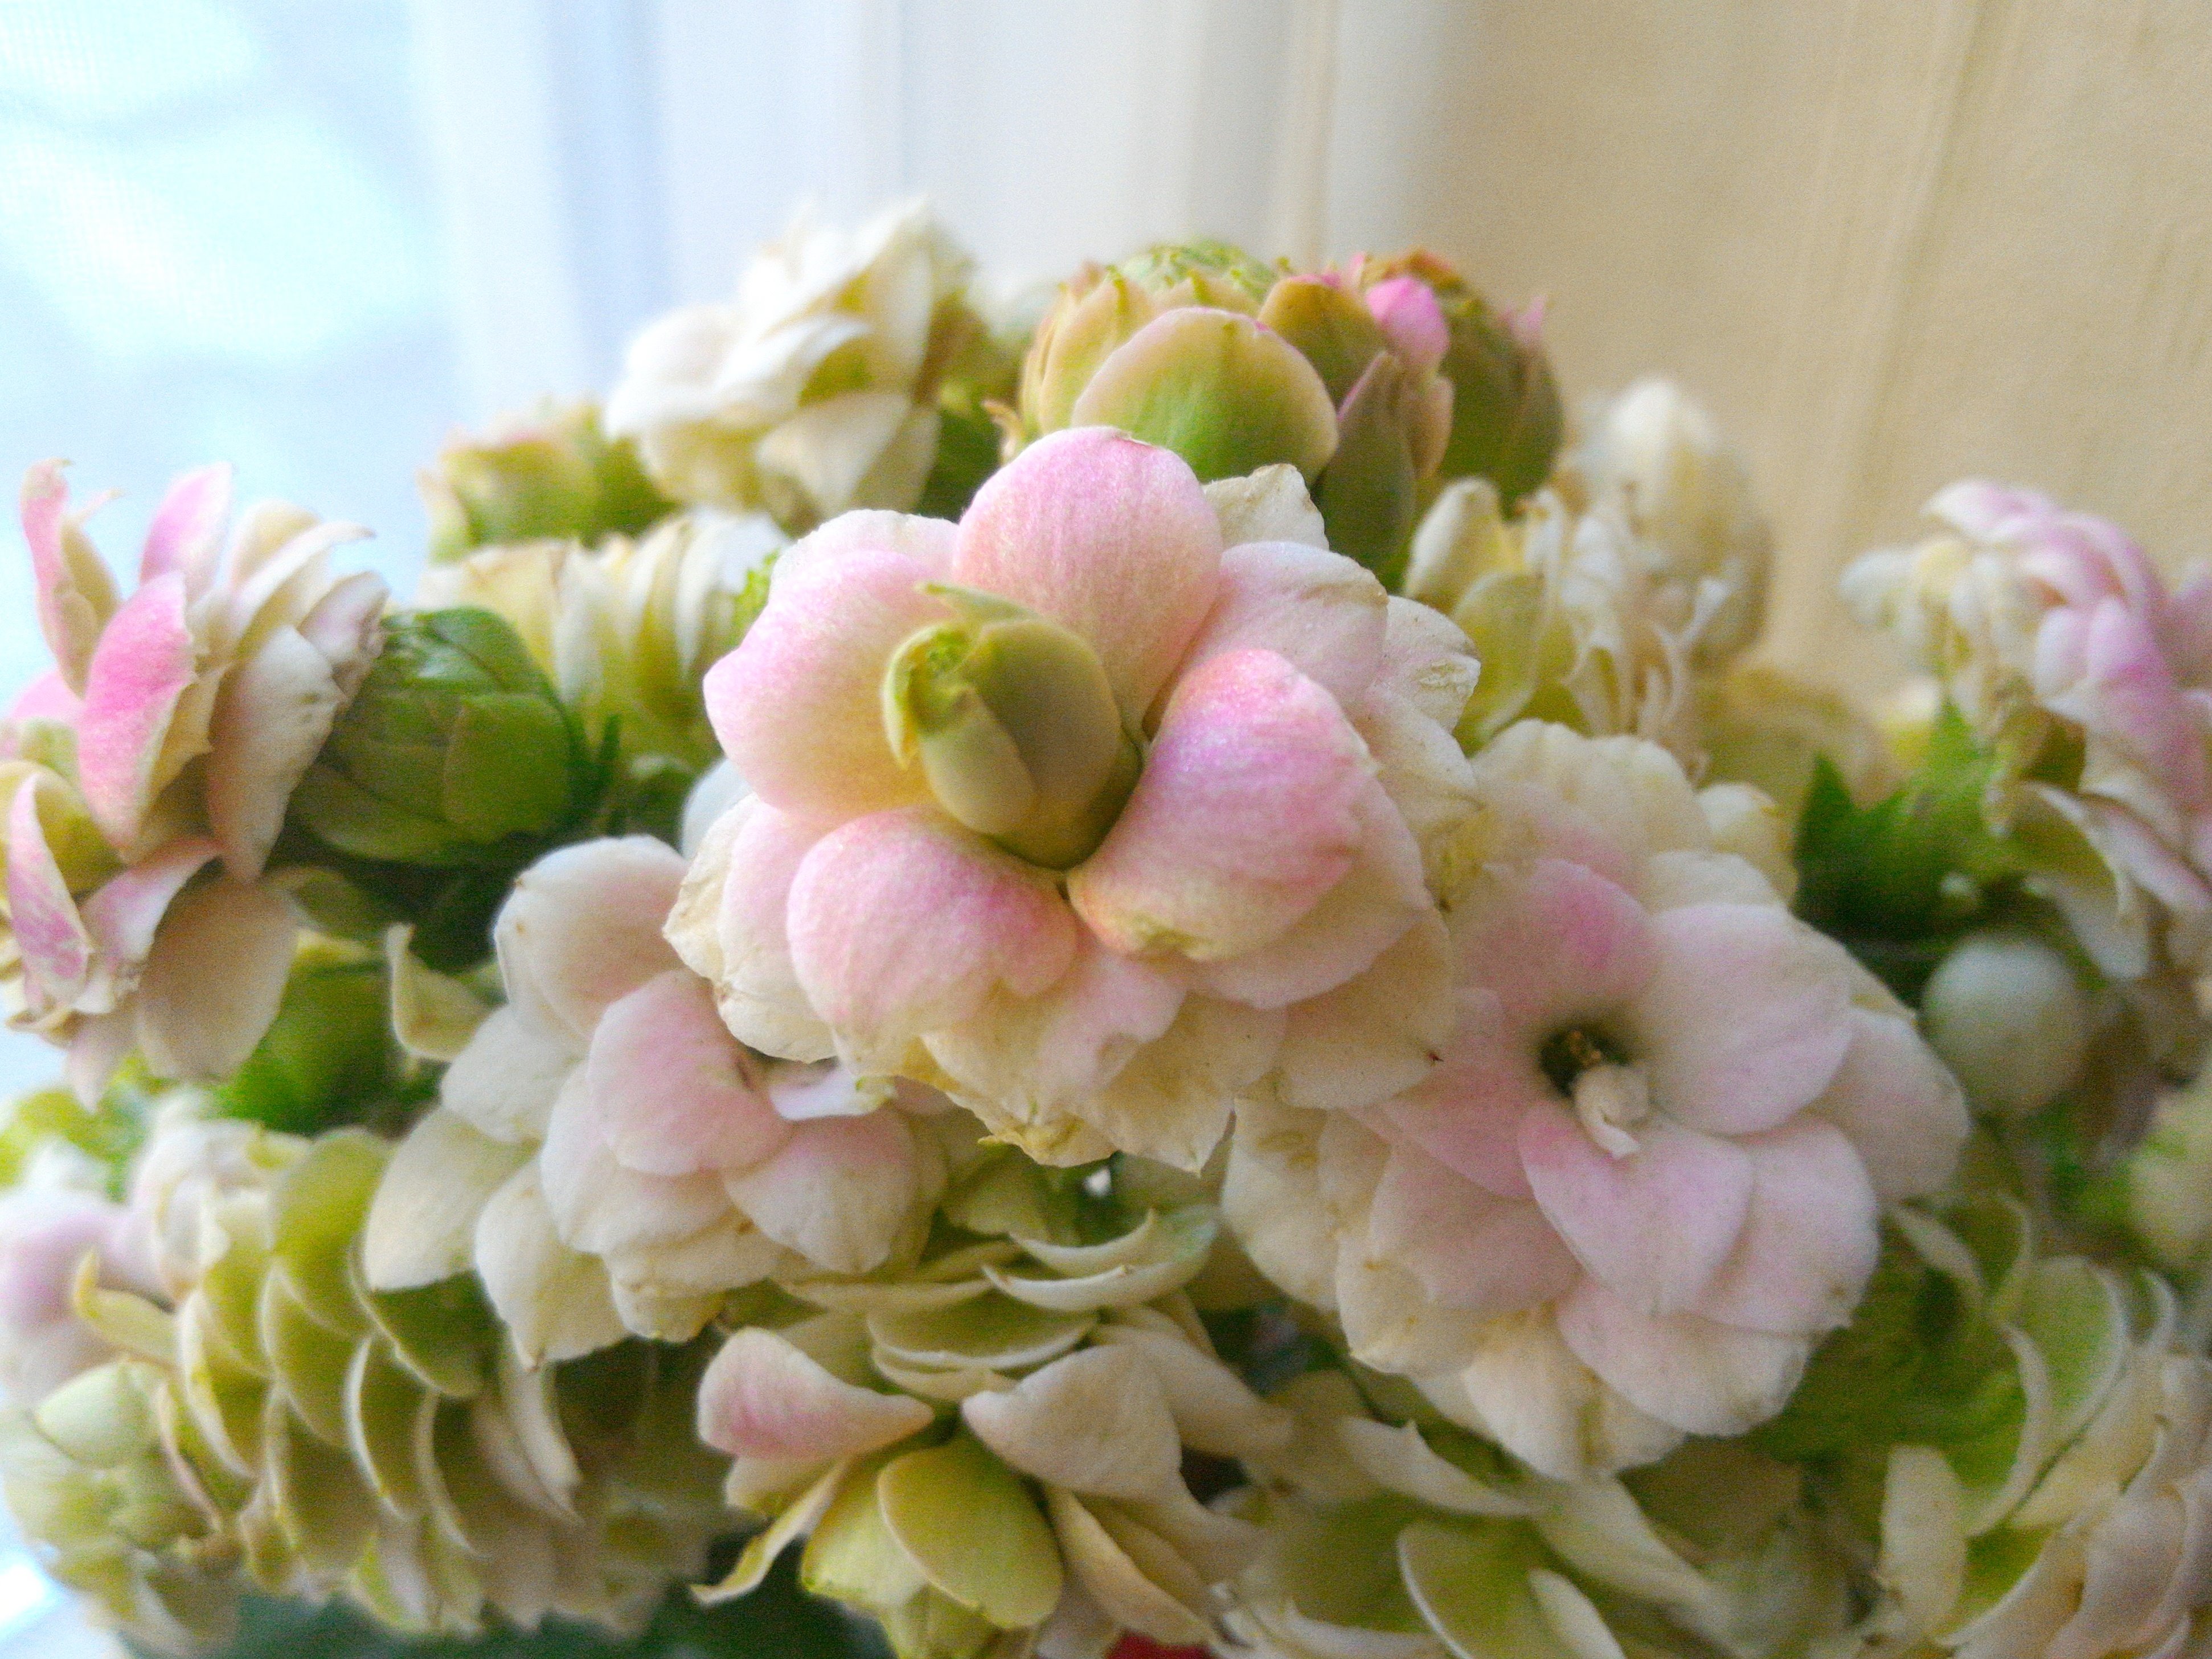 تويتر Masumi على تويتر カランコエ クイーンローズ パリ 花言葉 日本では 幸福を告げる たくさんの小さな思い出 あなたを守る おおらかな心 西洋 Popularity 人気 人望 なんですって ピンクの花と花言葉に惚れてゲット 今はまだ８分咲き 満開に